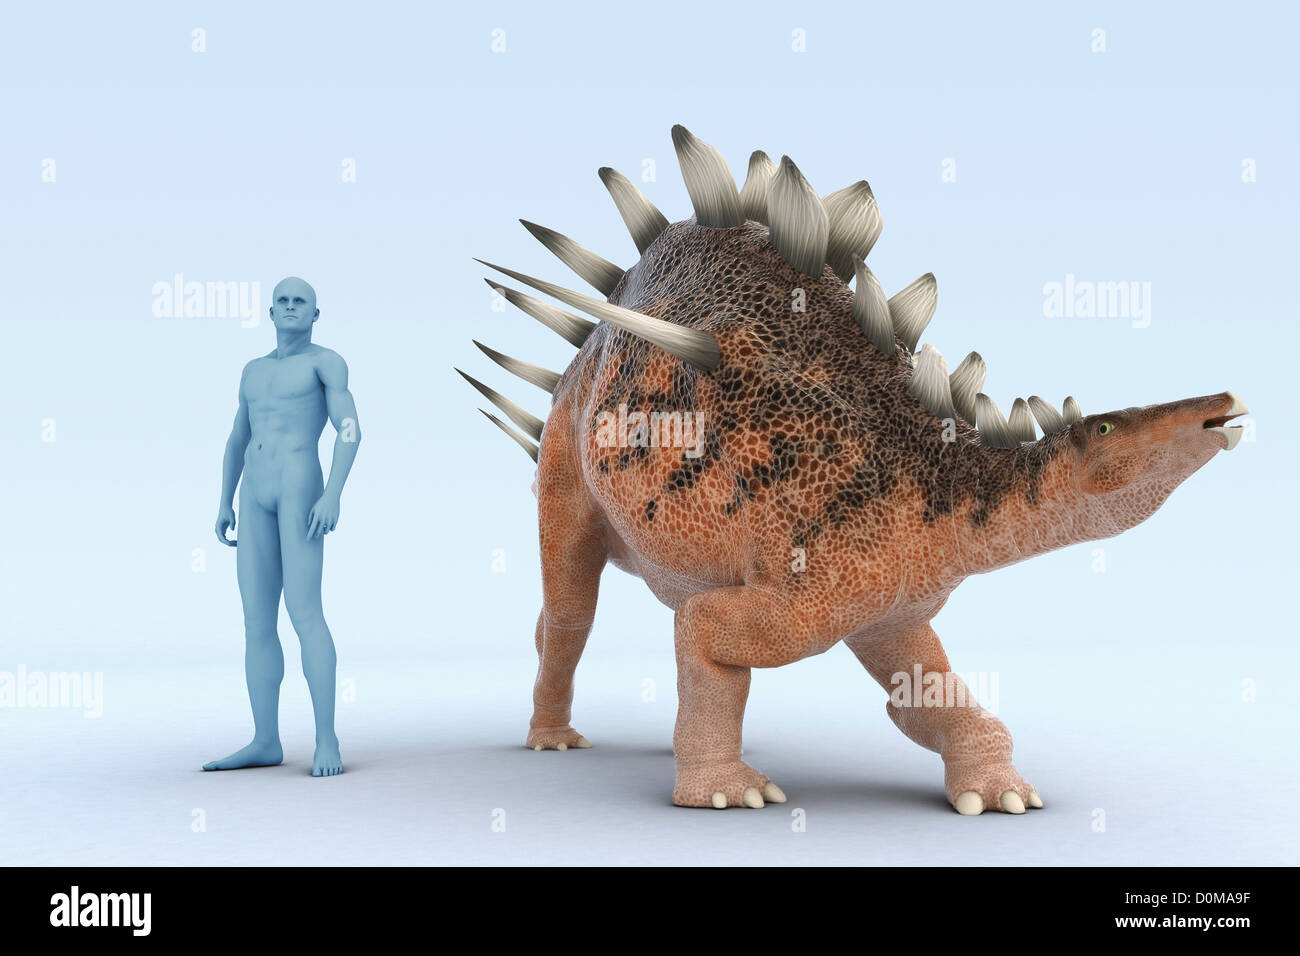 Modell von einem Kentrosaurus Dinosaurier zeigt die Größe im Vergleich zu einem Menschen. Stockfoto